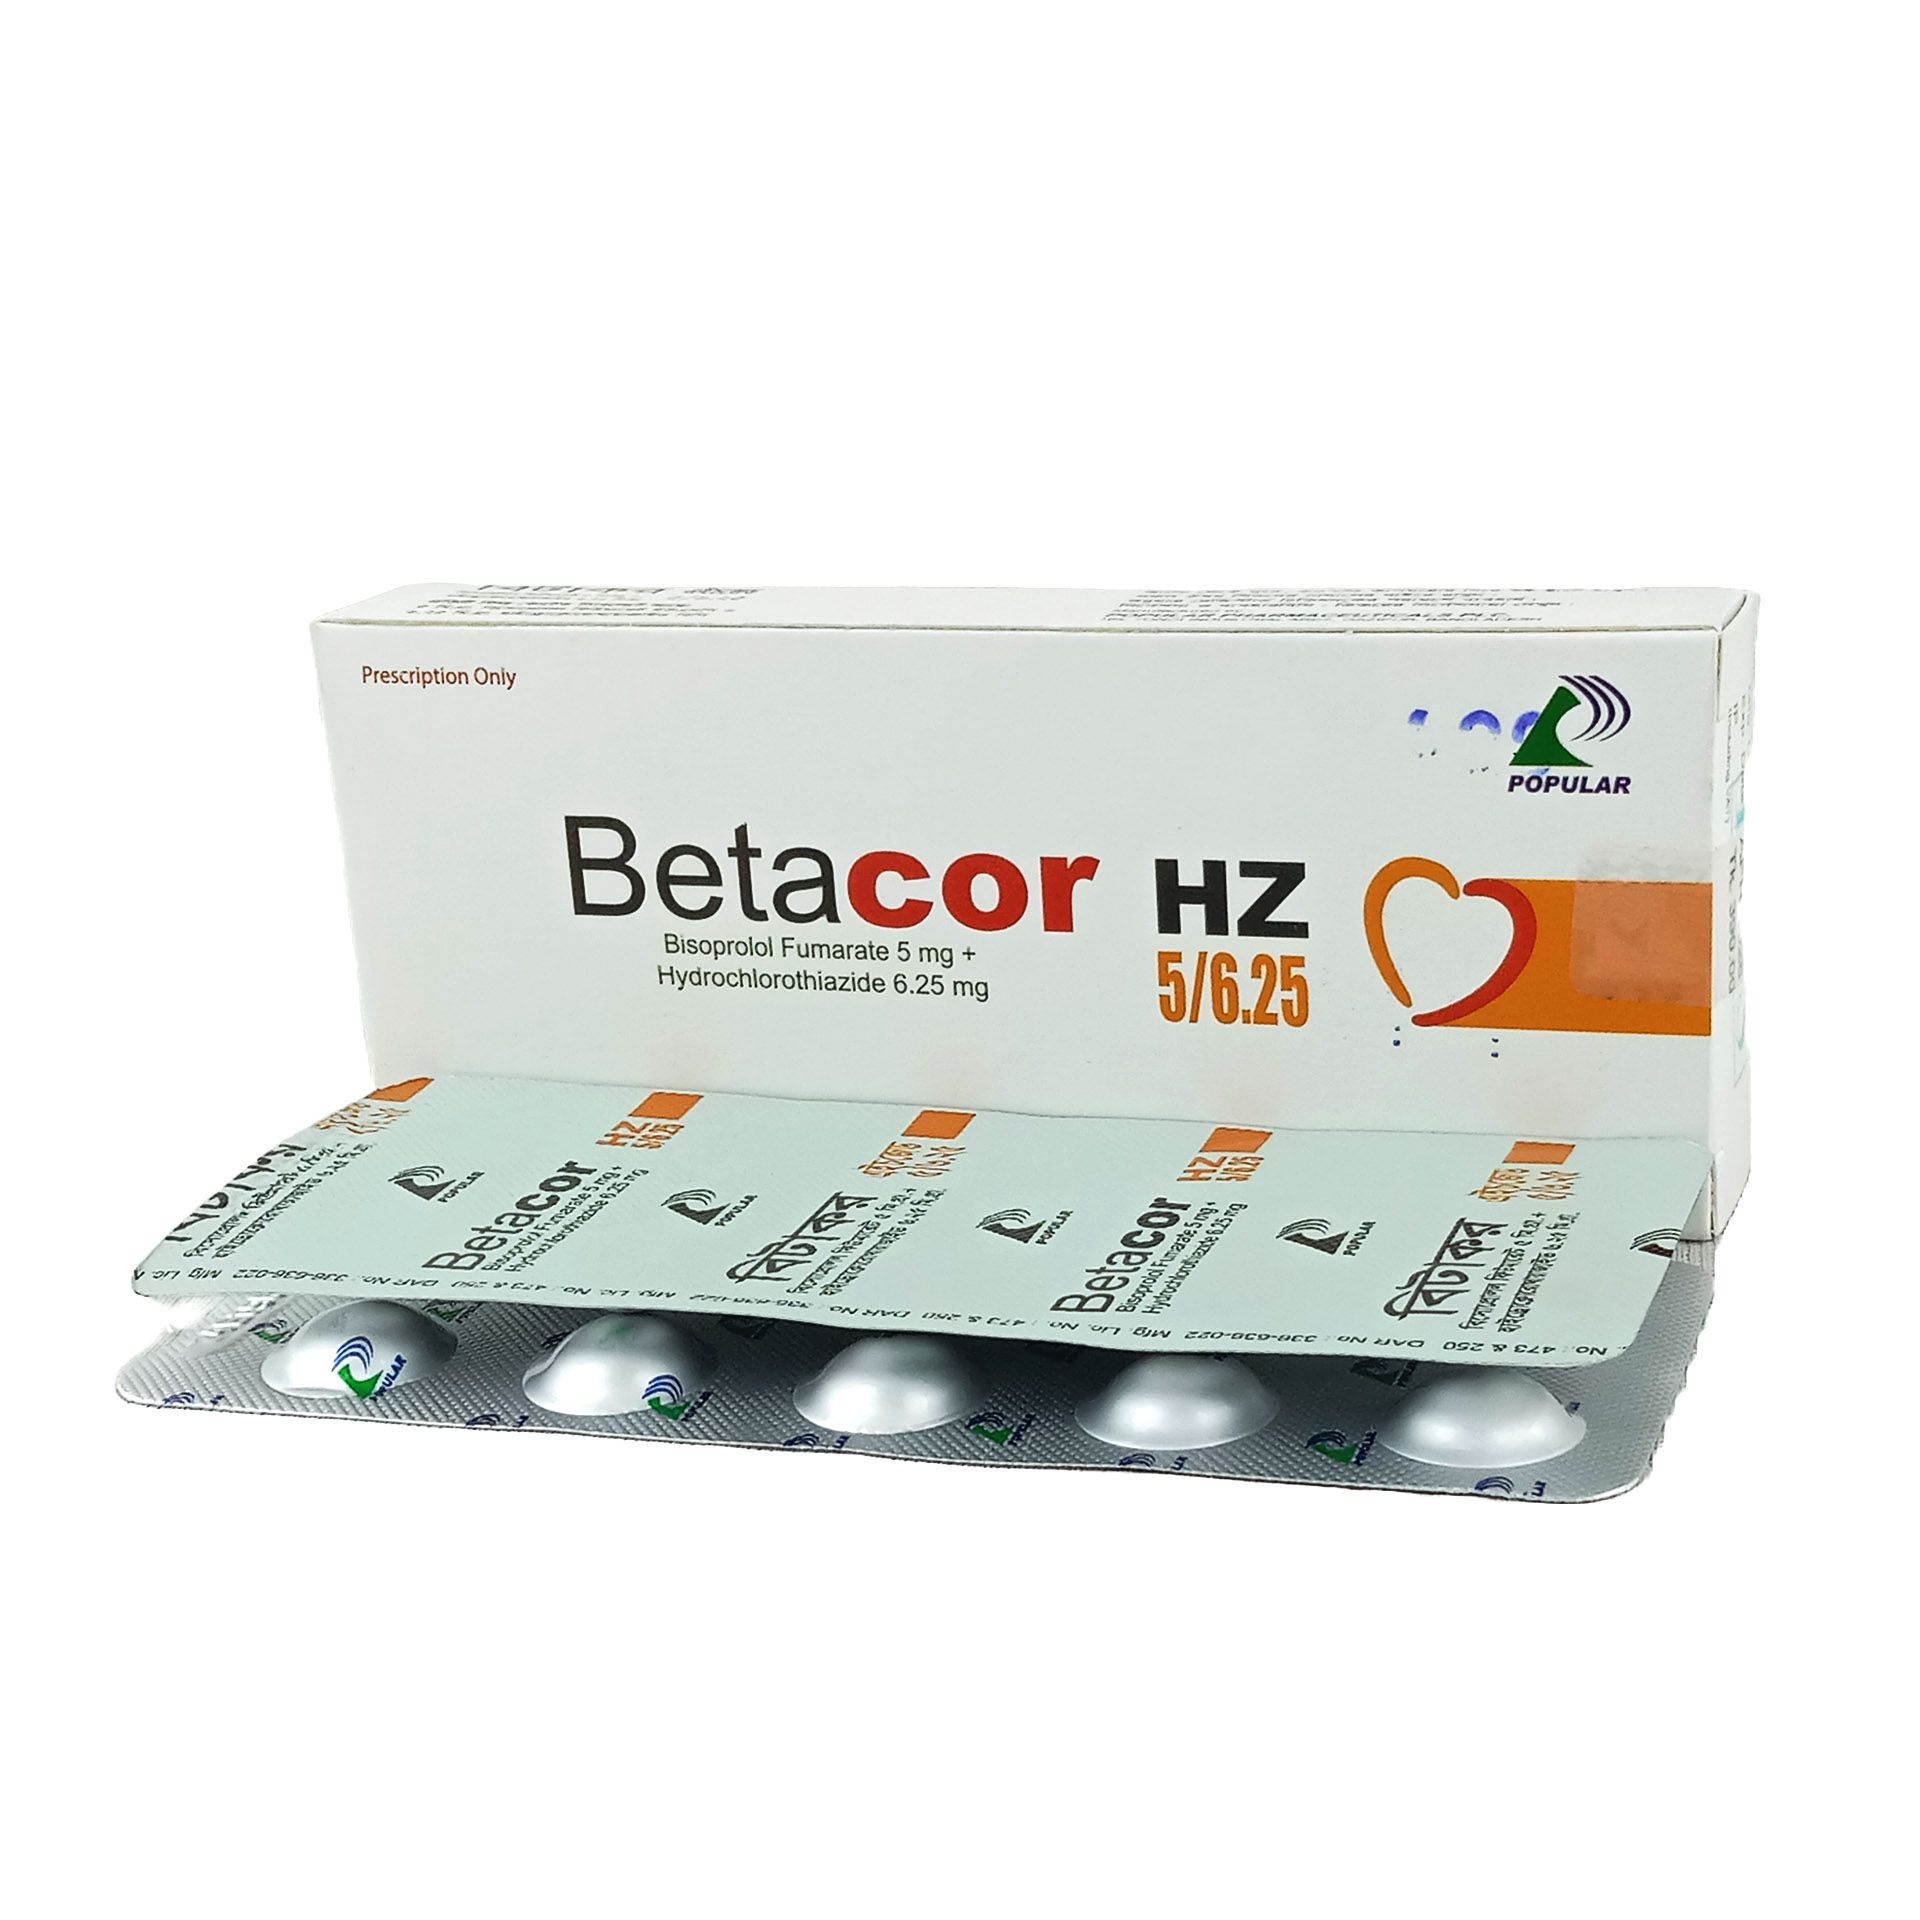 Betacor HZ 5mg+6.25mg Tablet